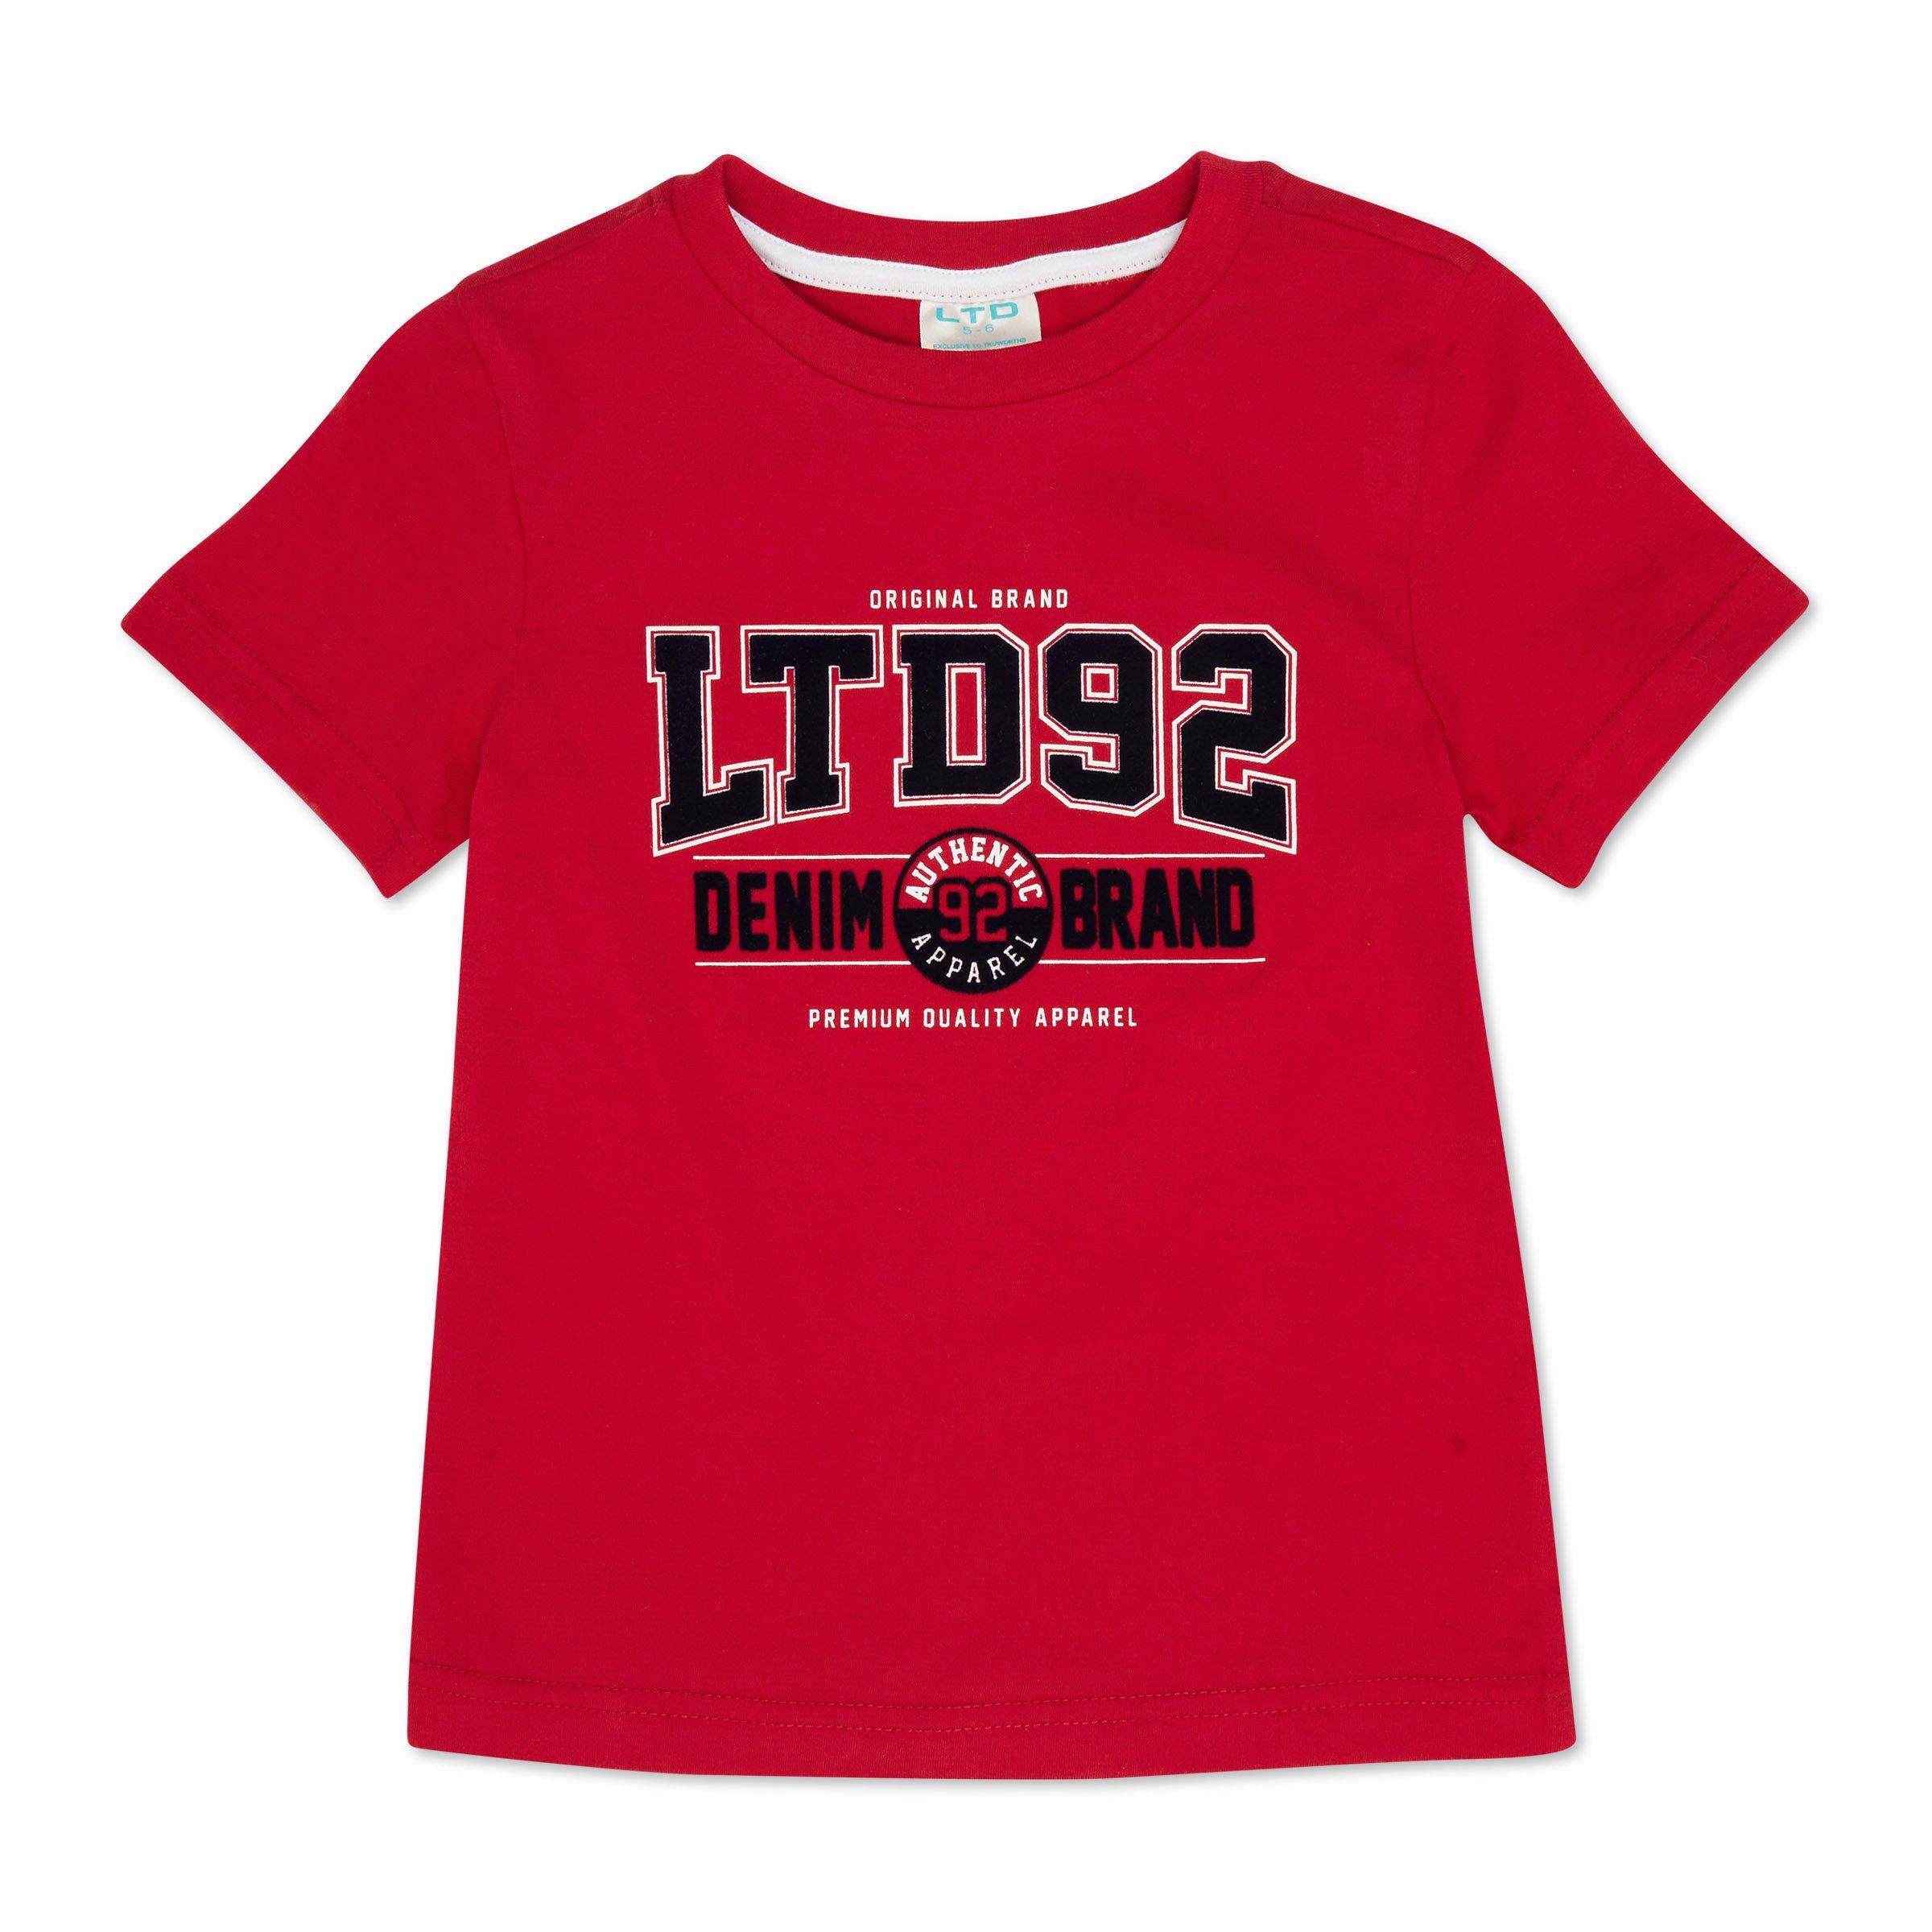 Kid Boy Red T-shirt (3110676) | LTD Kids